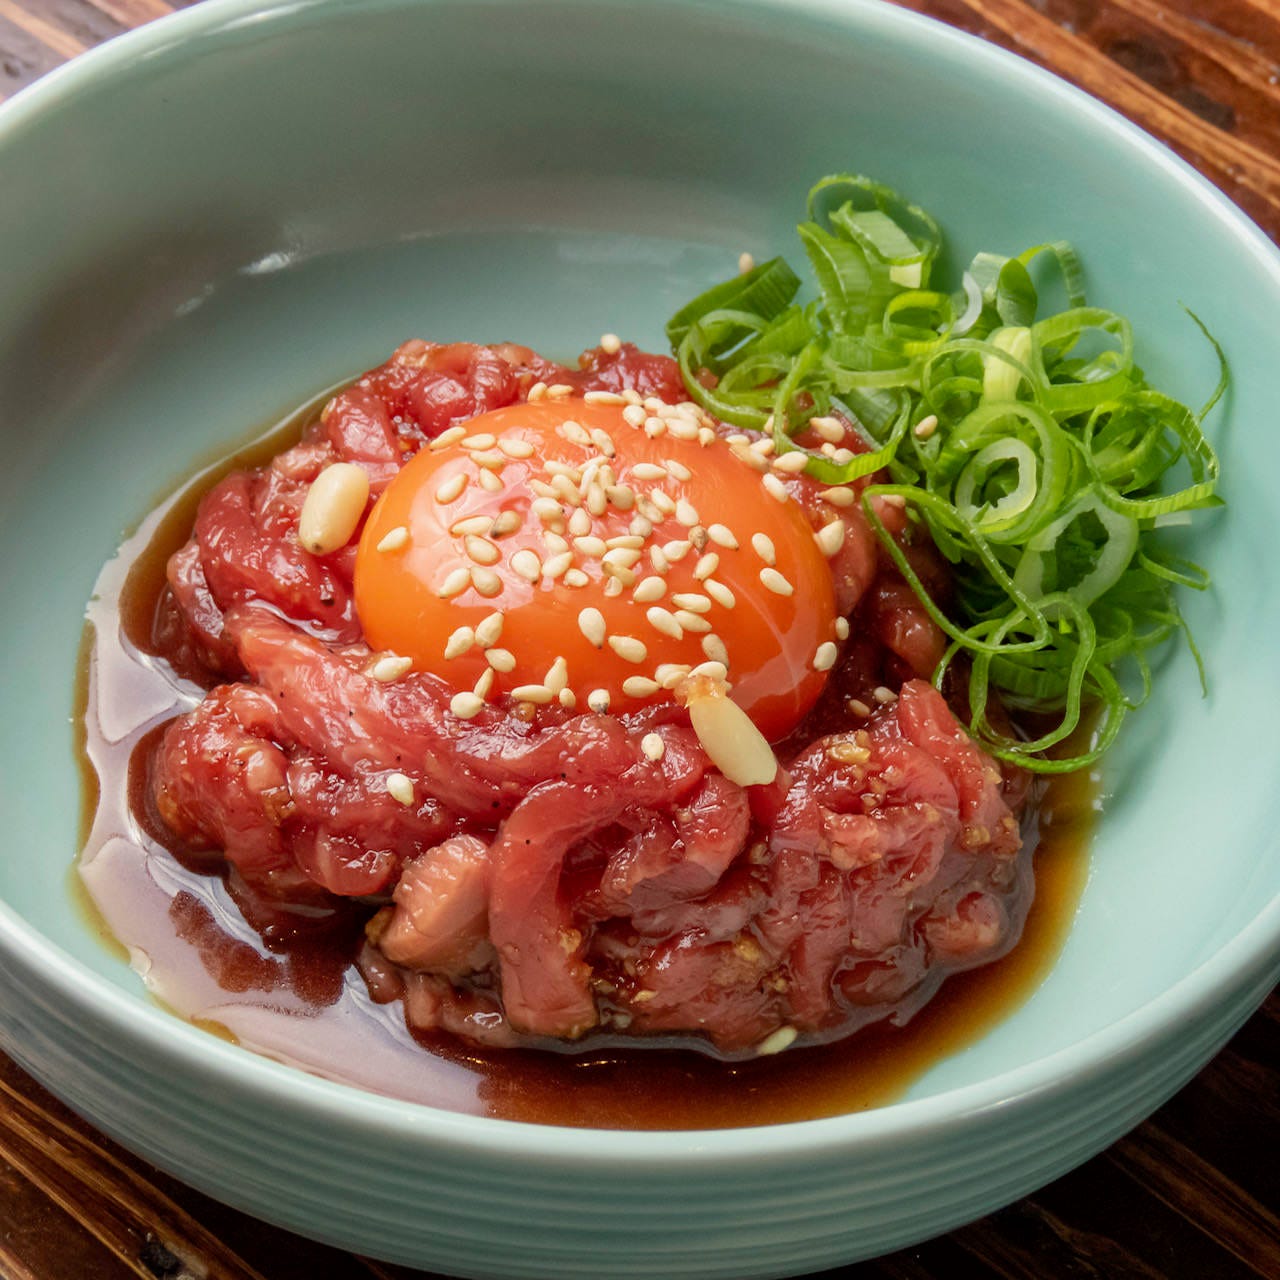 大仙伝統の味、もも肉を使用した赤身ユッケもぜひ堪能ください